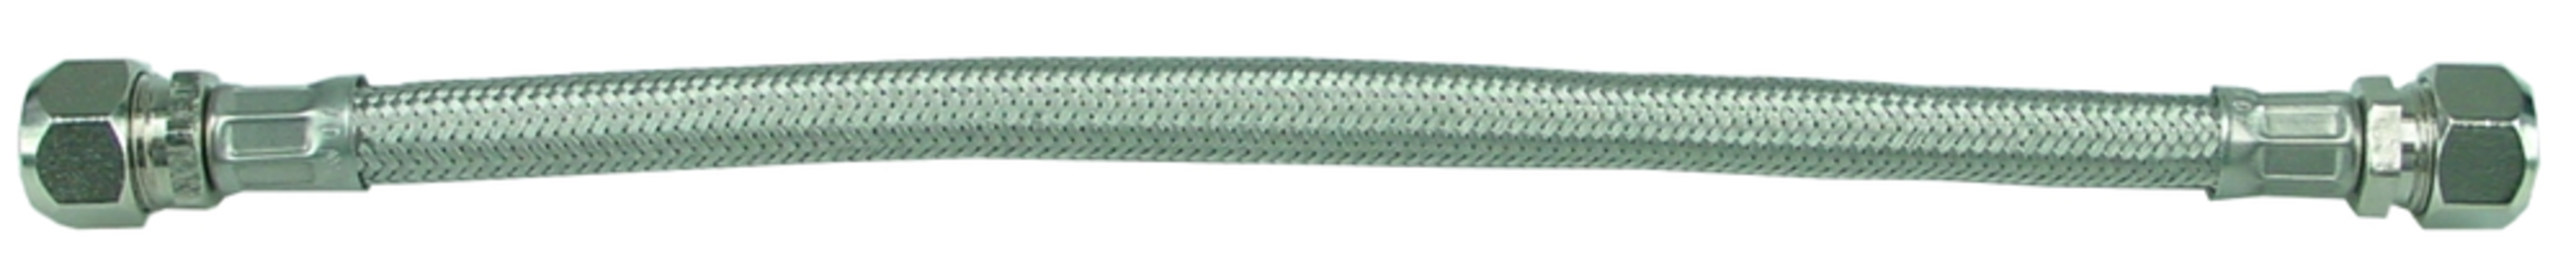 Sub KIWA metalen flex.aansluitslang 1 2bix10 30 cm